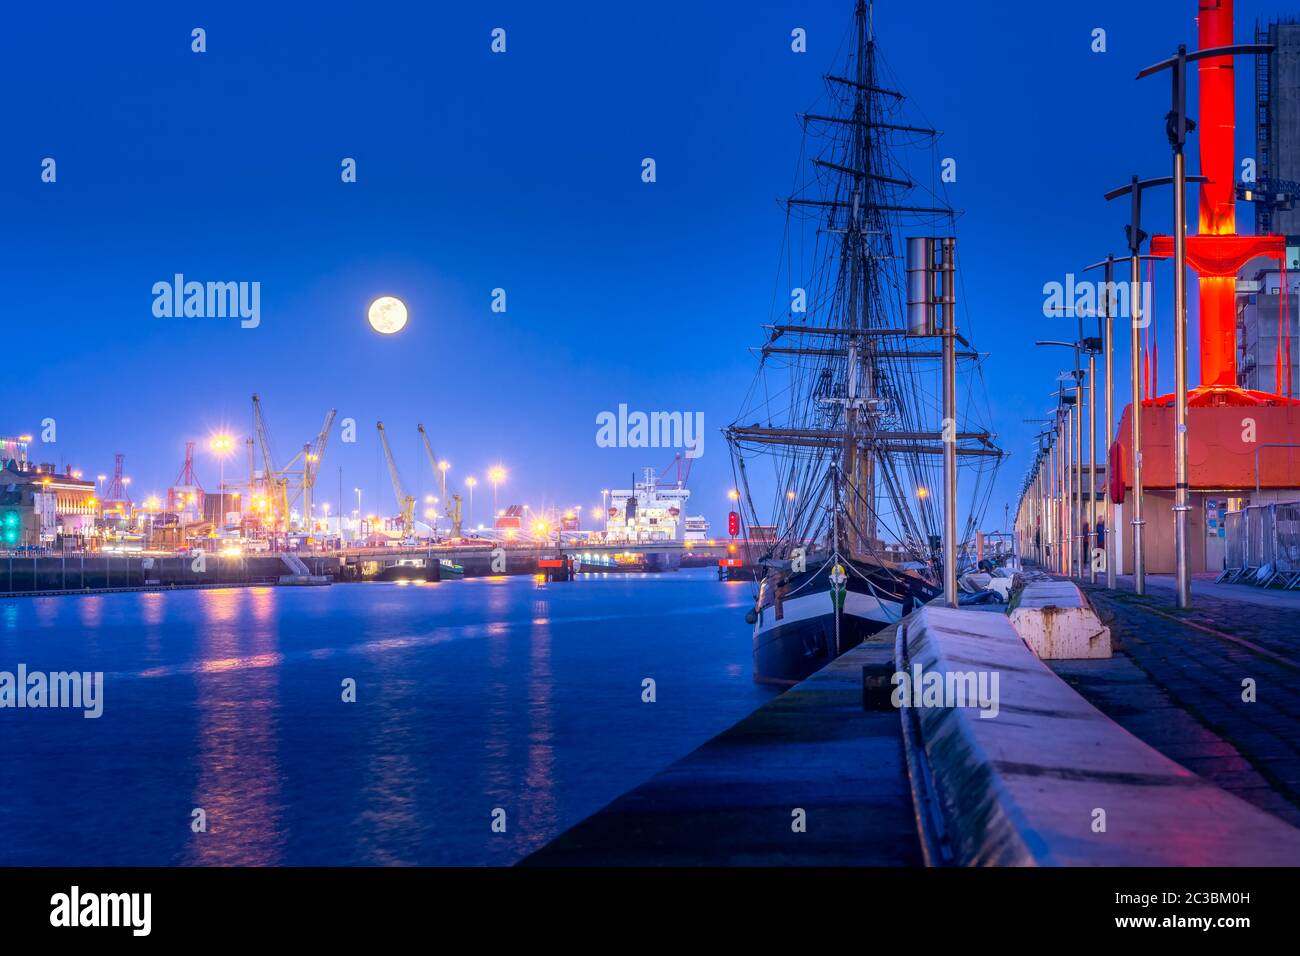 Tall Ship angedockt in Dublin Dock auf Liffey River, Blaue Stunde und Vollmond. Beleuchtete Embankment und fließend Wasser, Fotos mit langer Belichtungszeit, Irland Stockfoto